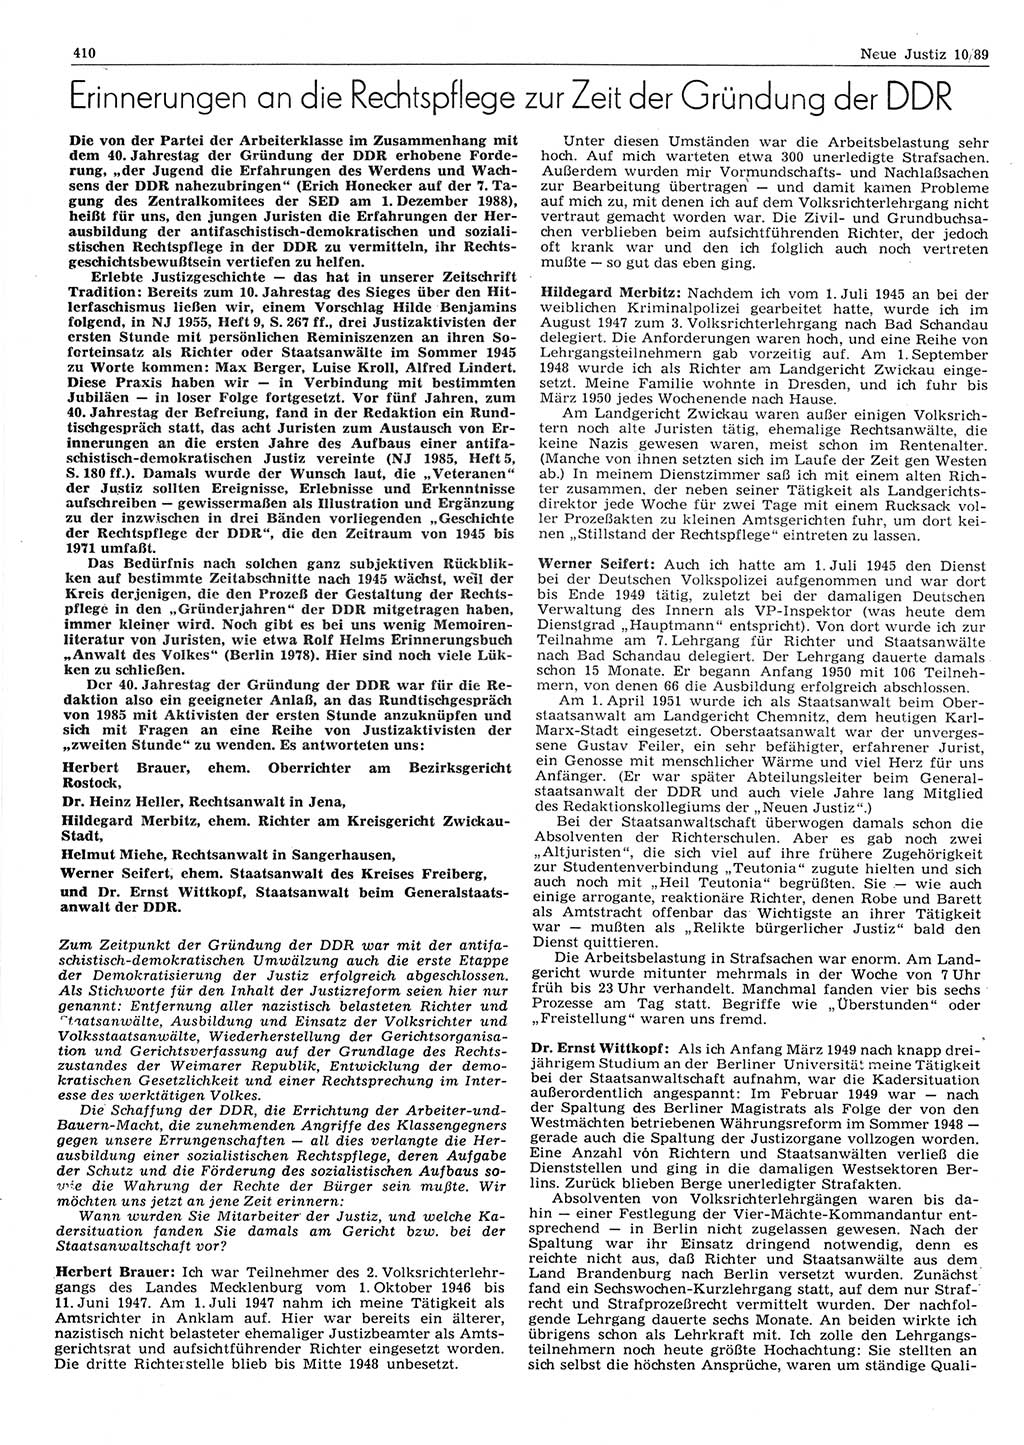 Neue Justiz (NJ), Zeitschrift für sozialistisches Recht und Gesetzlichkeit [Deutsche Demokratische Republik (DDR)], 43. Jahrgang 1989, Seite 410 (NJ DDR 1989, S. 410)